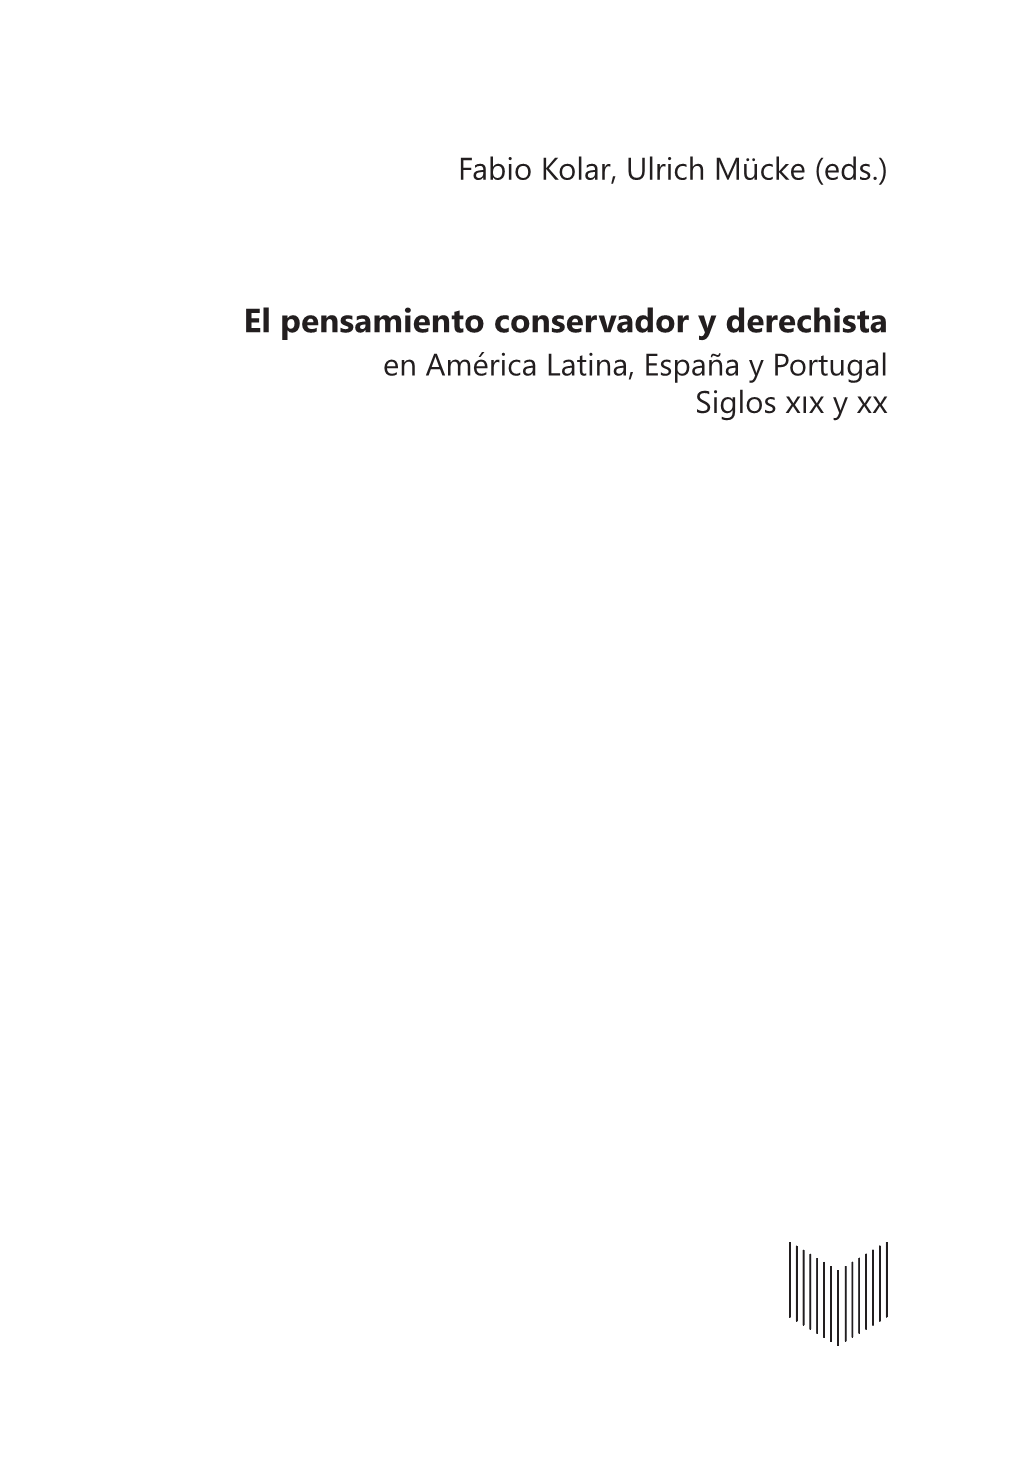 El Pensamiento Conservador Y Derechista En América Latina, España Y Portugal Siglos ��� Y 